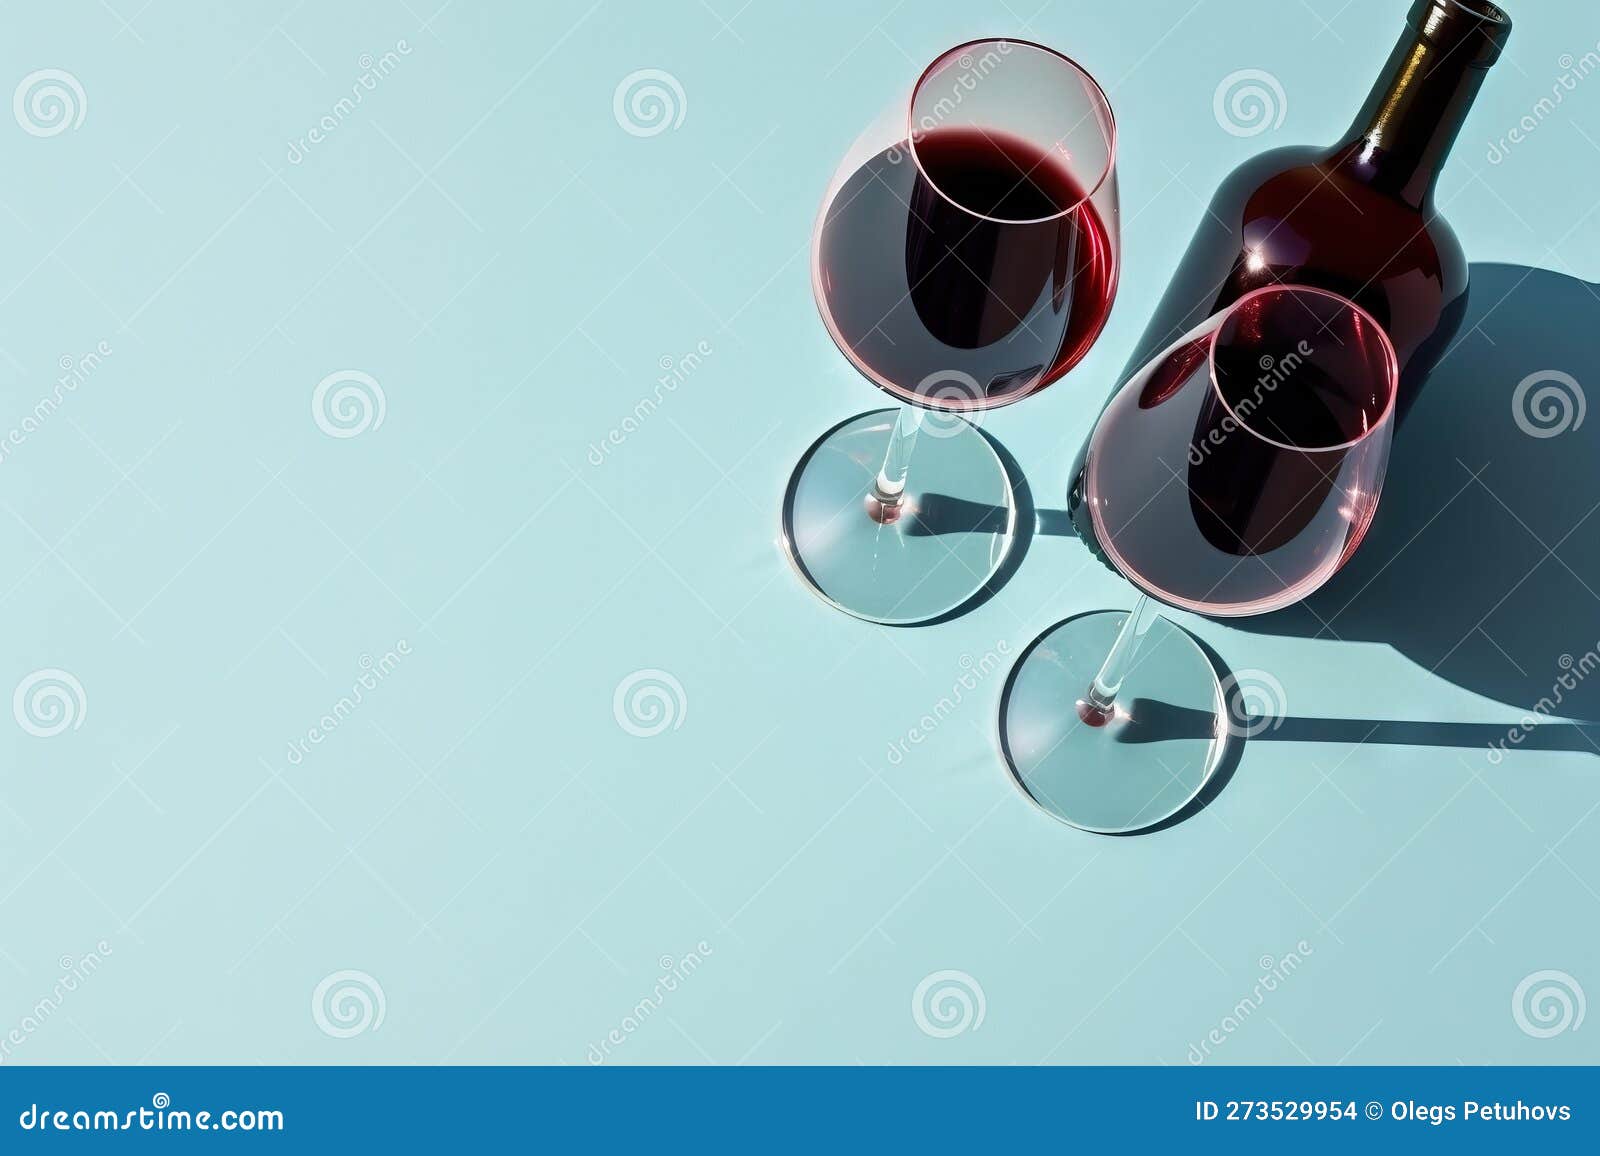 dessin d'une ligne continue d'un verre de vin. champagne et boire